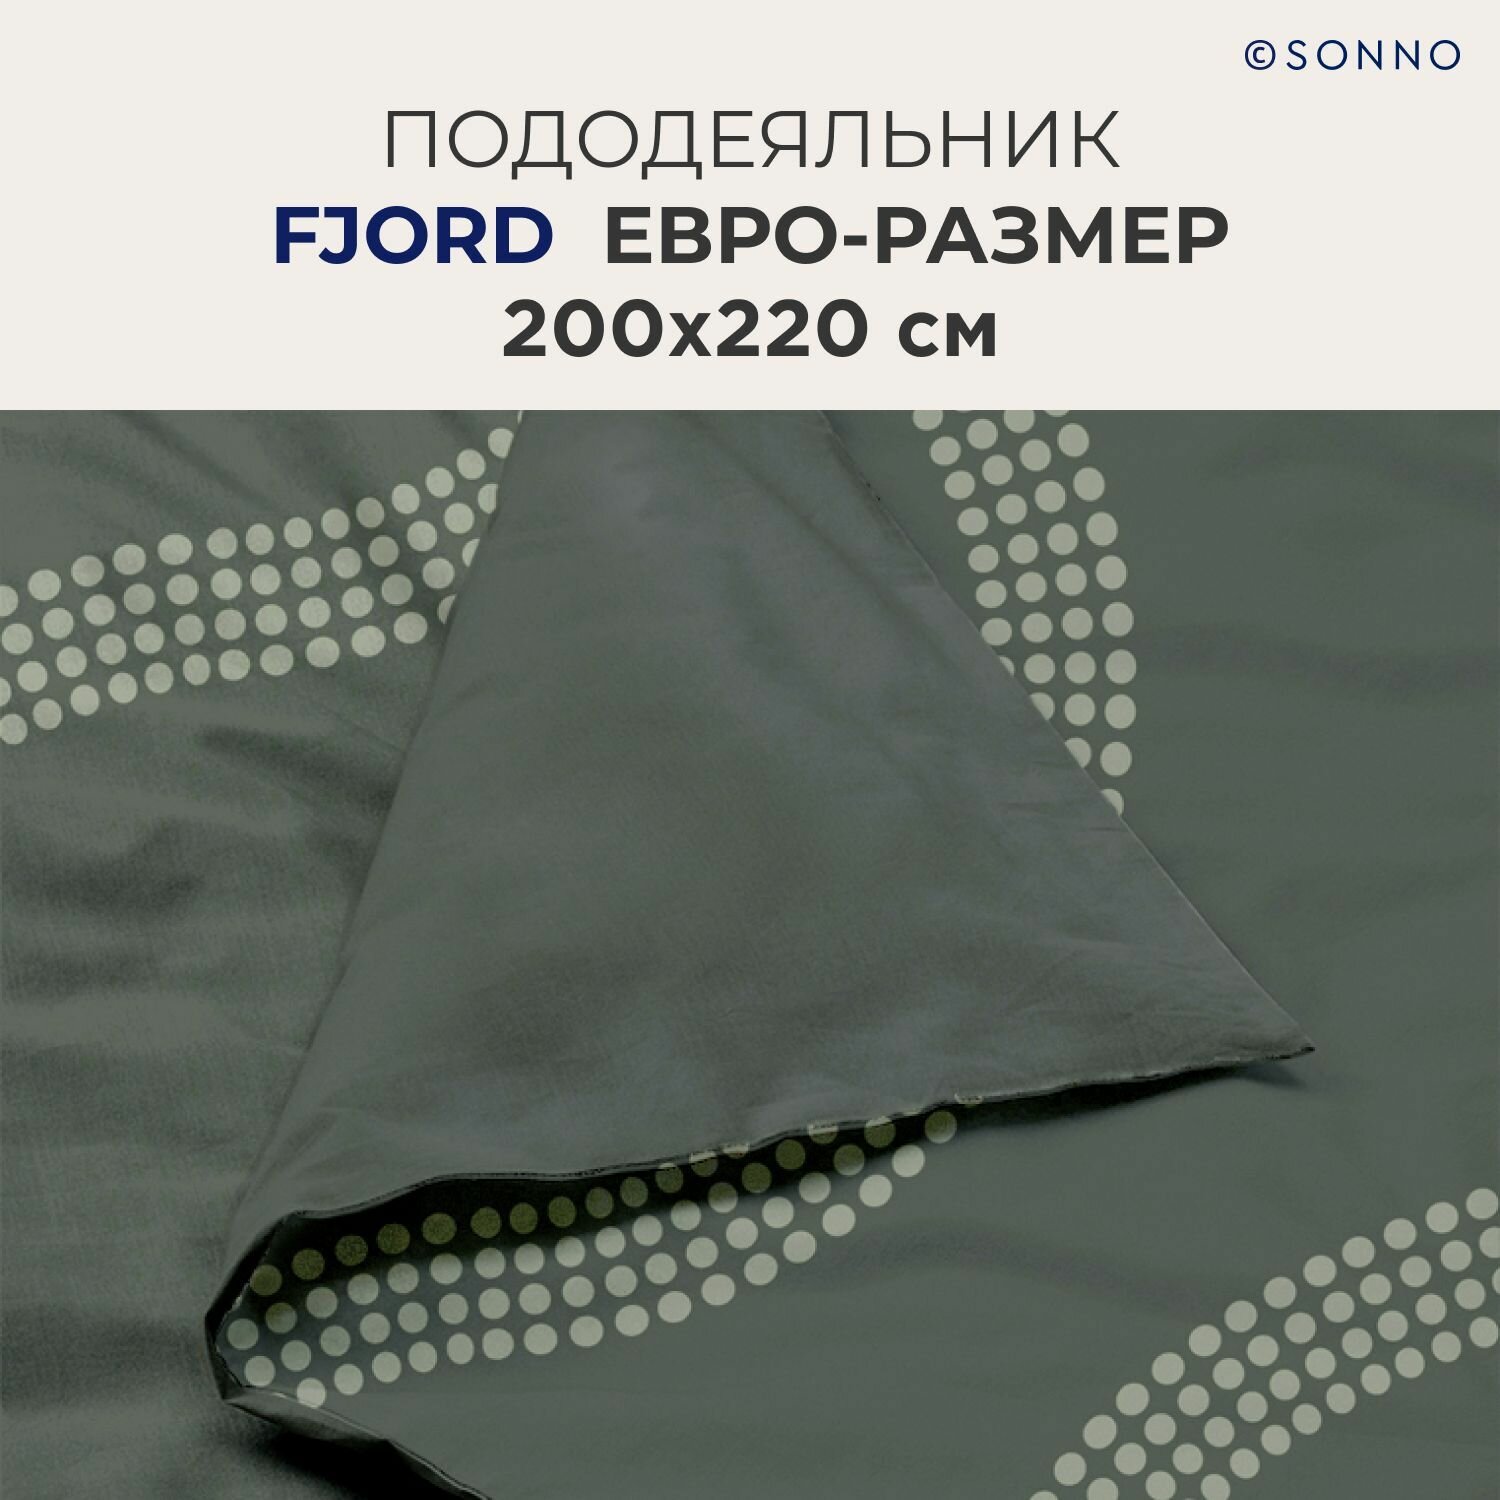 Комплект постельного белья SONNO FJORD евро-размер цвет Фьорд, Оливковый - фотография № 4